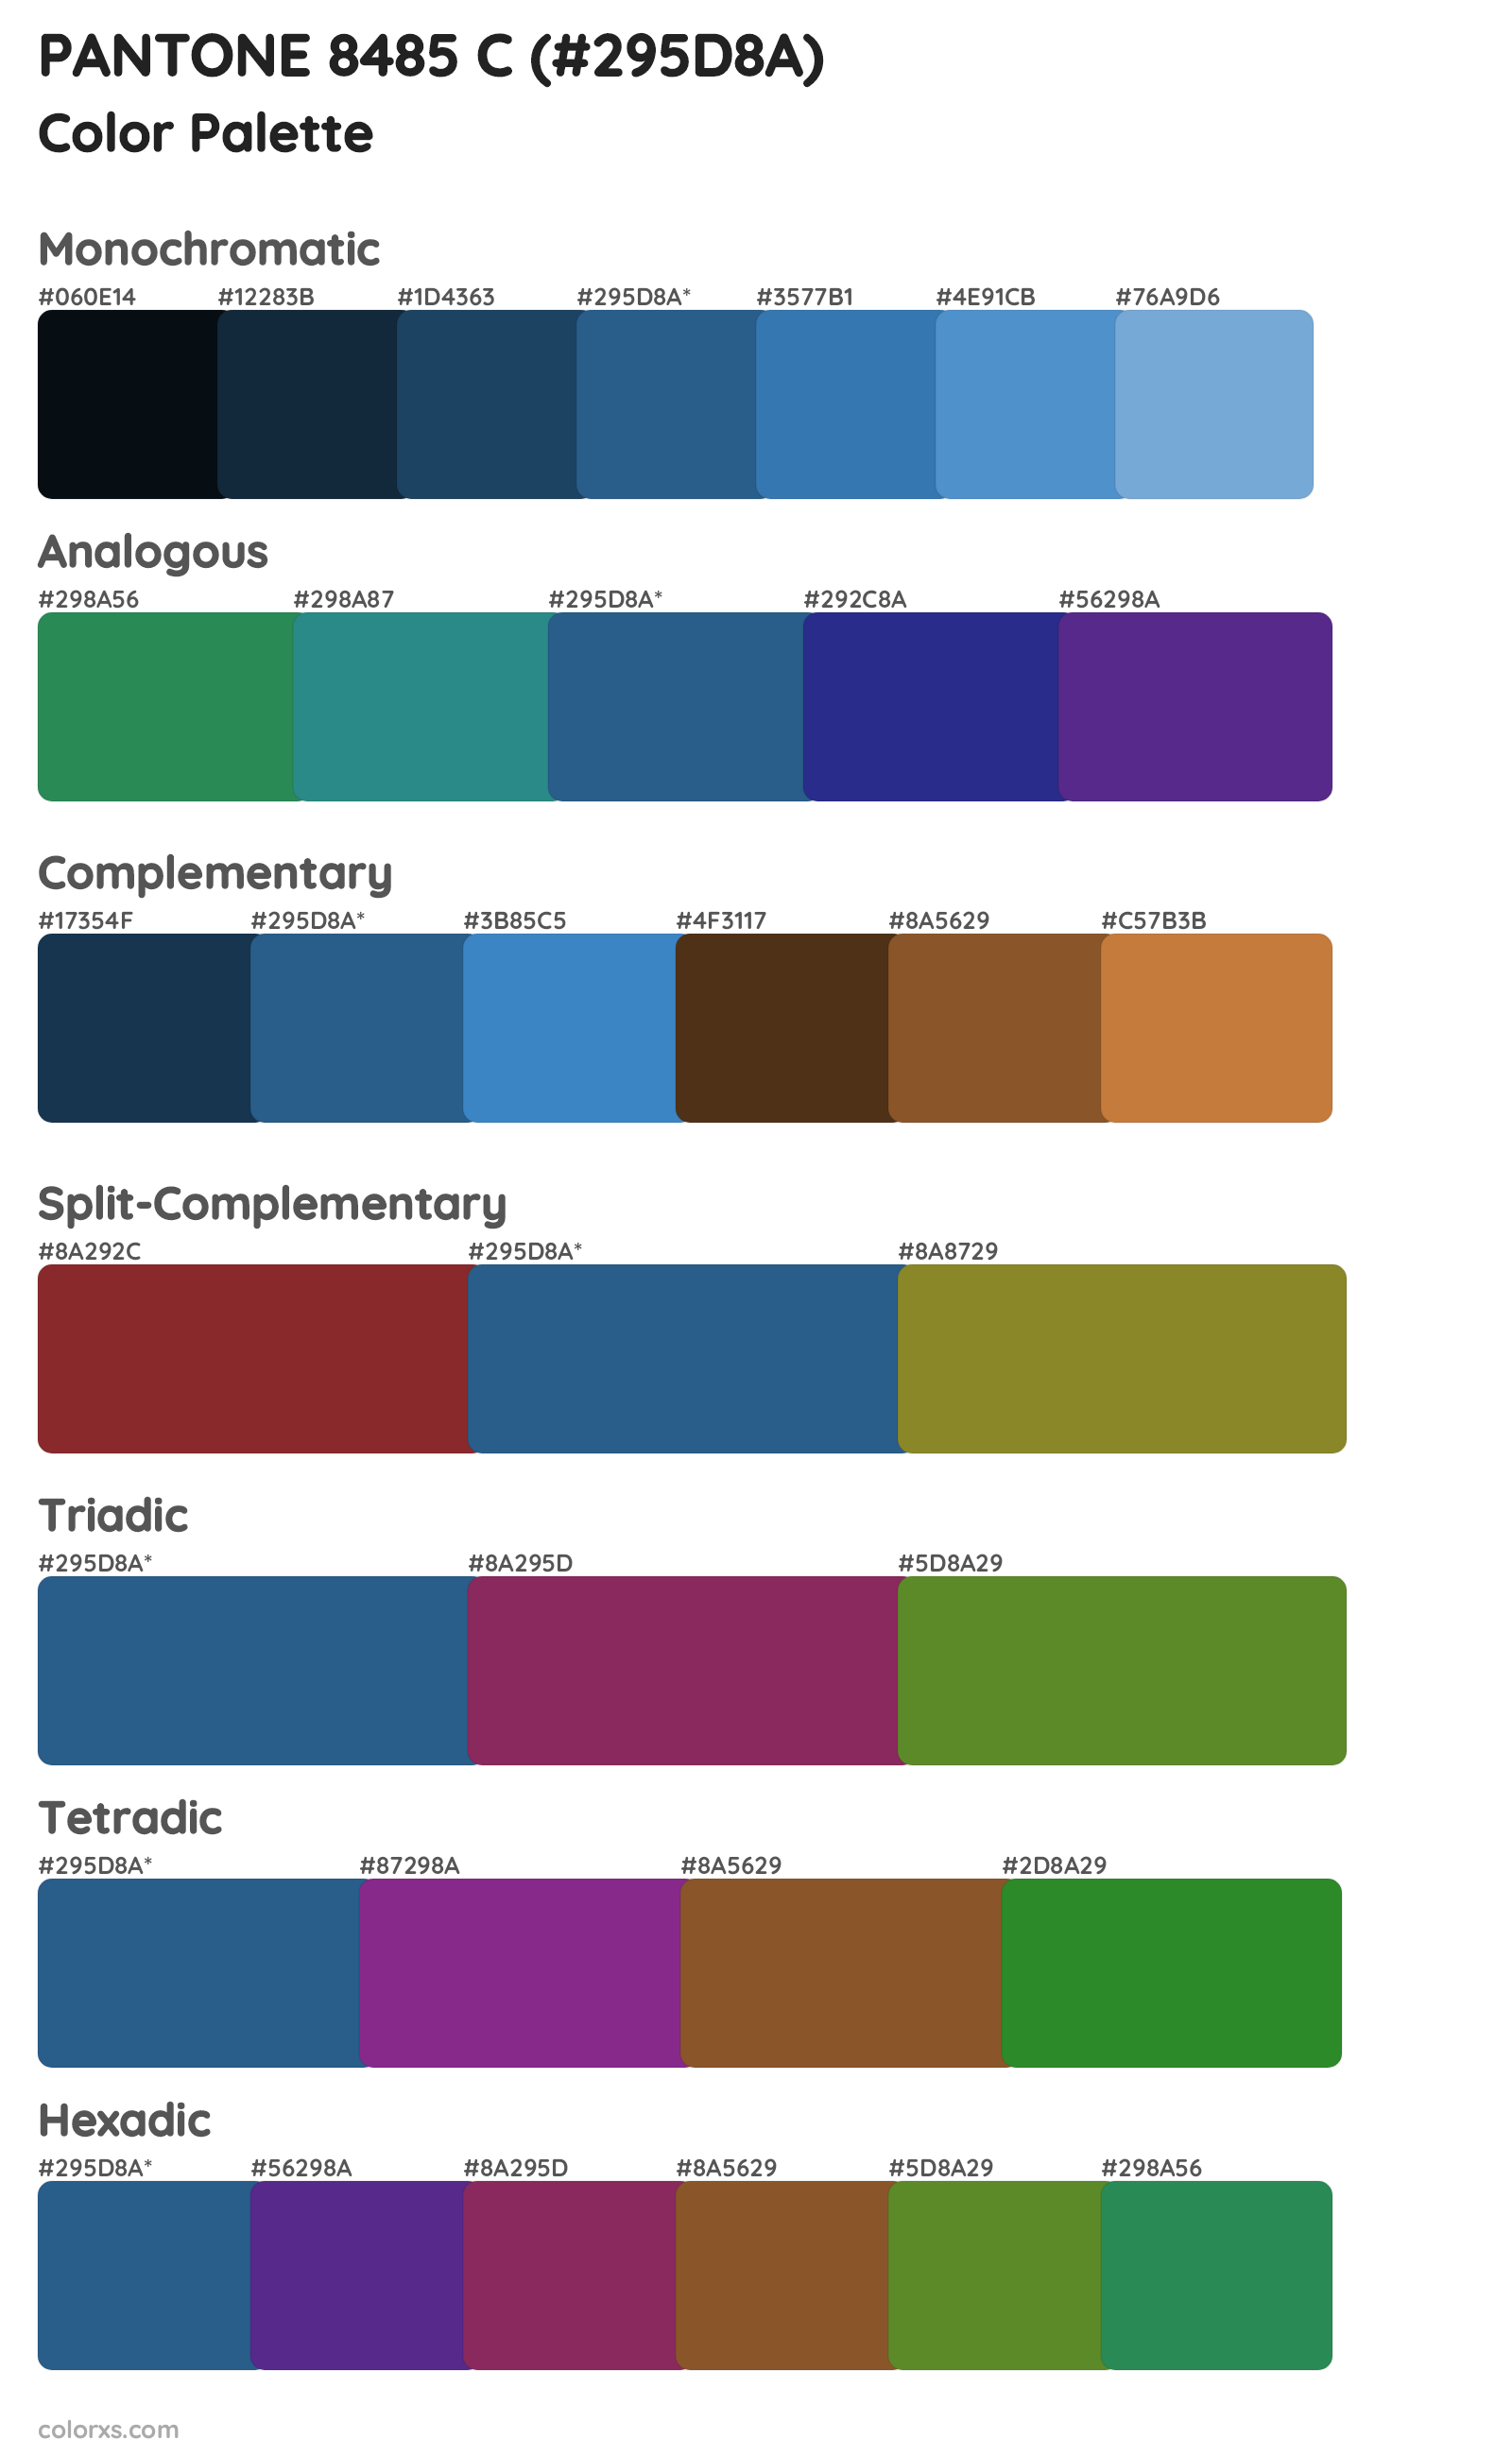 PANTONE 8485 C Color Scheme Palettes